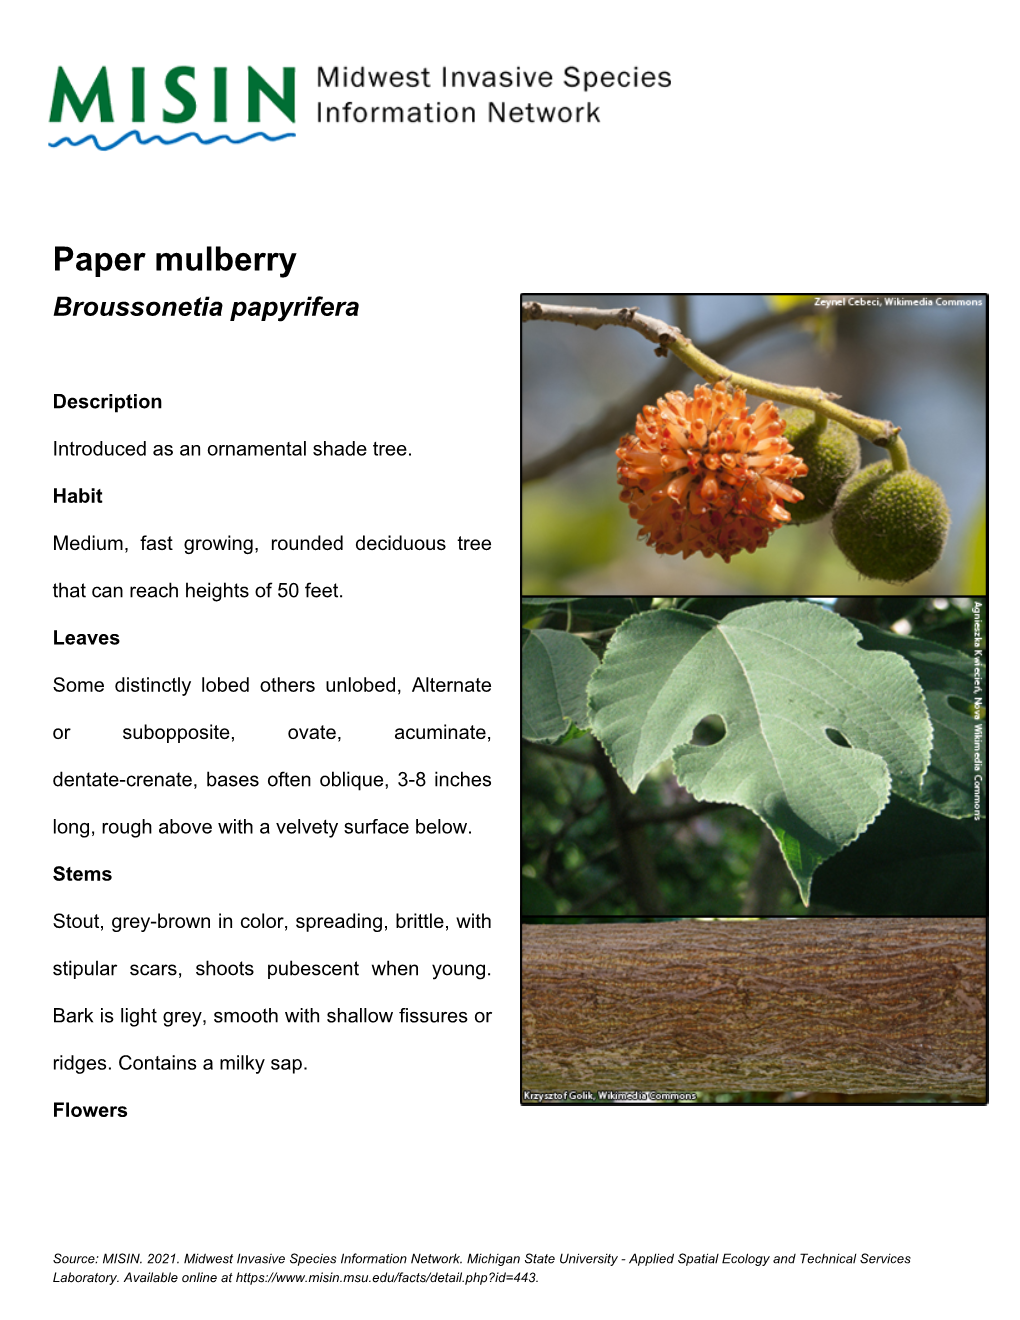 Paper Mulberry Broussonetia Papyrifera